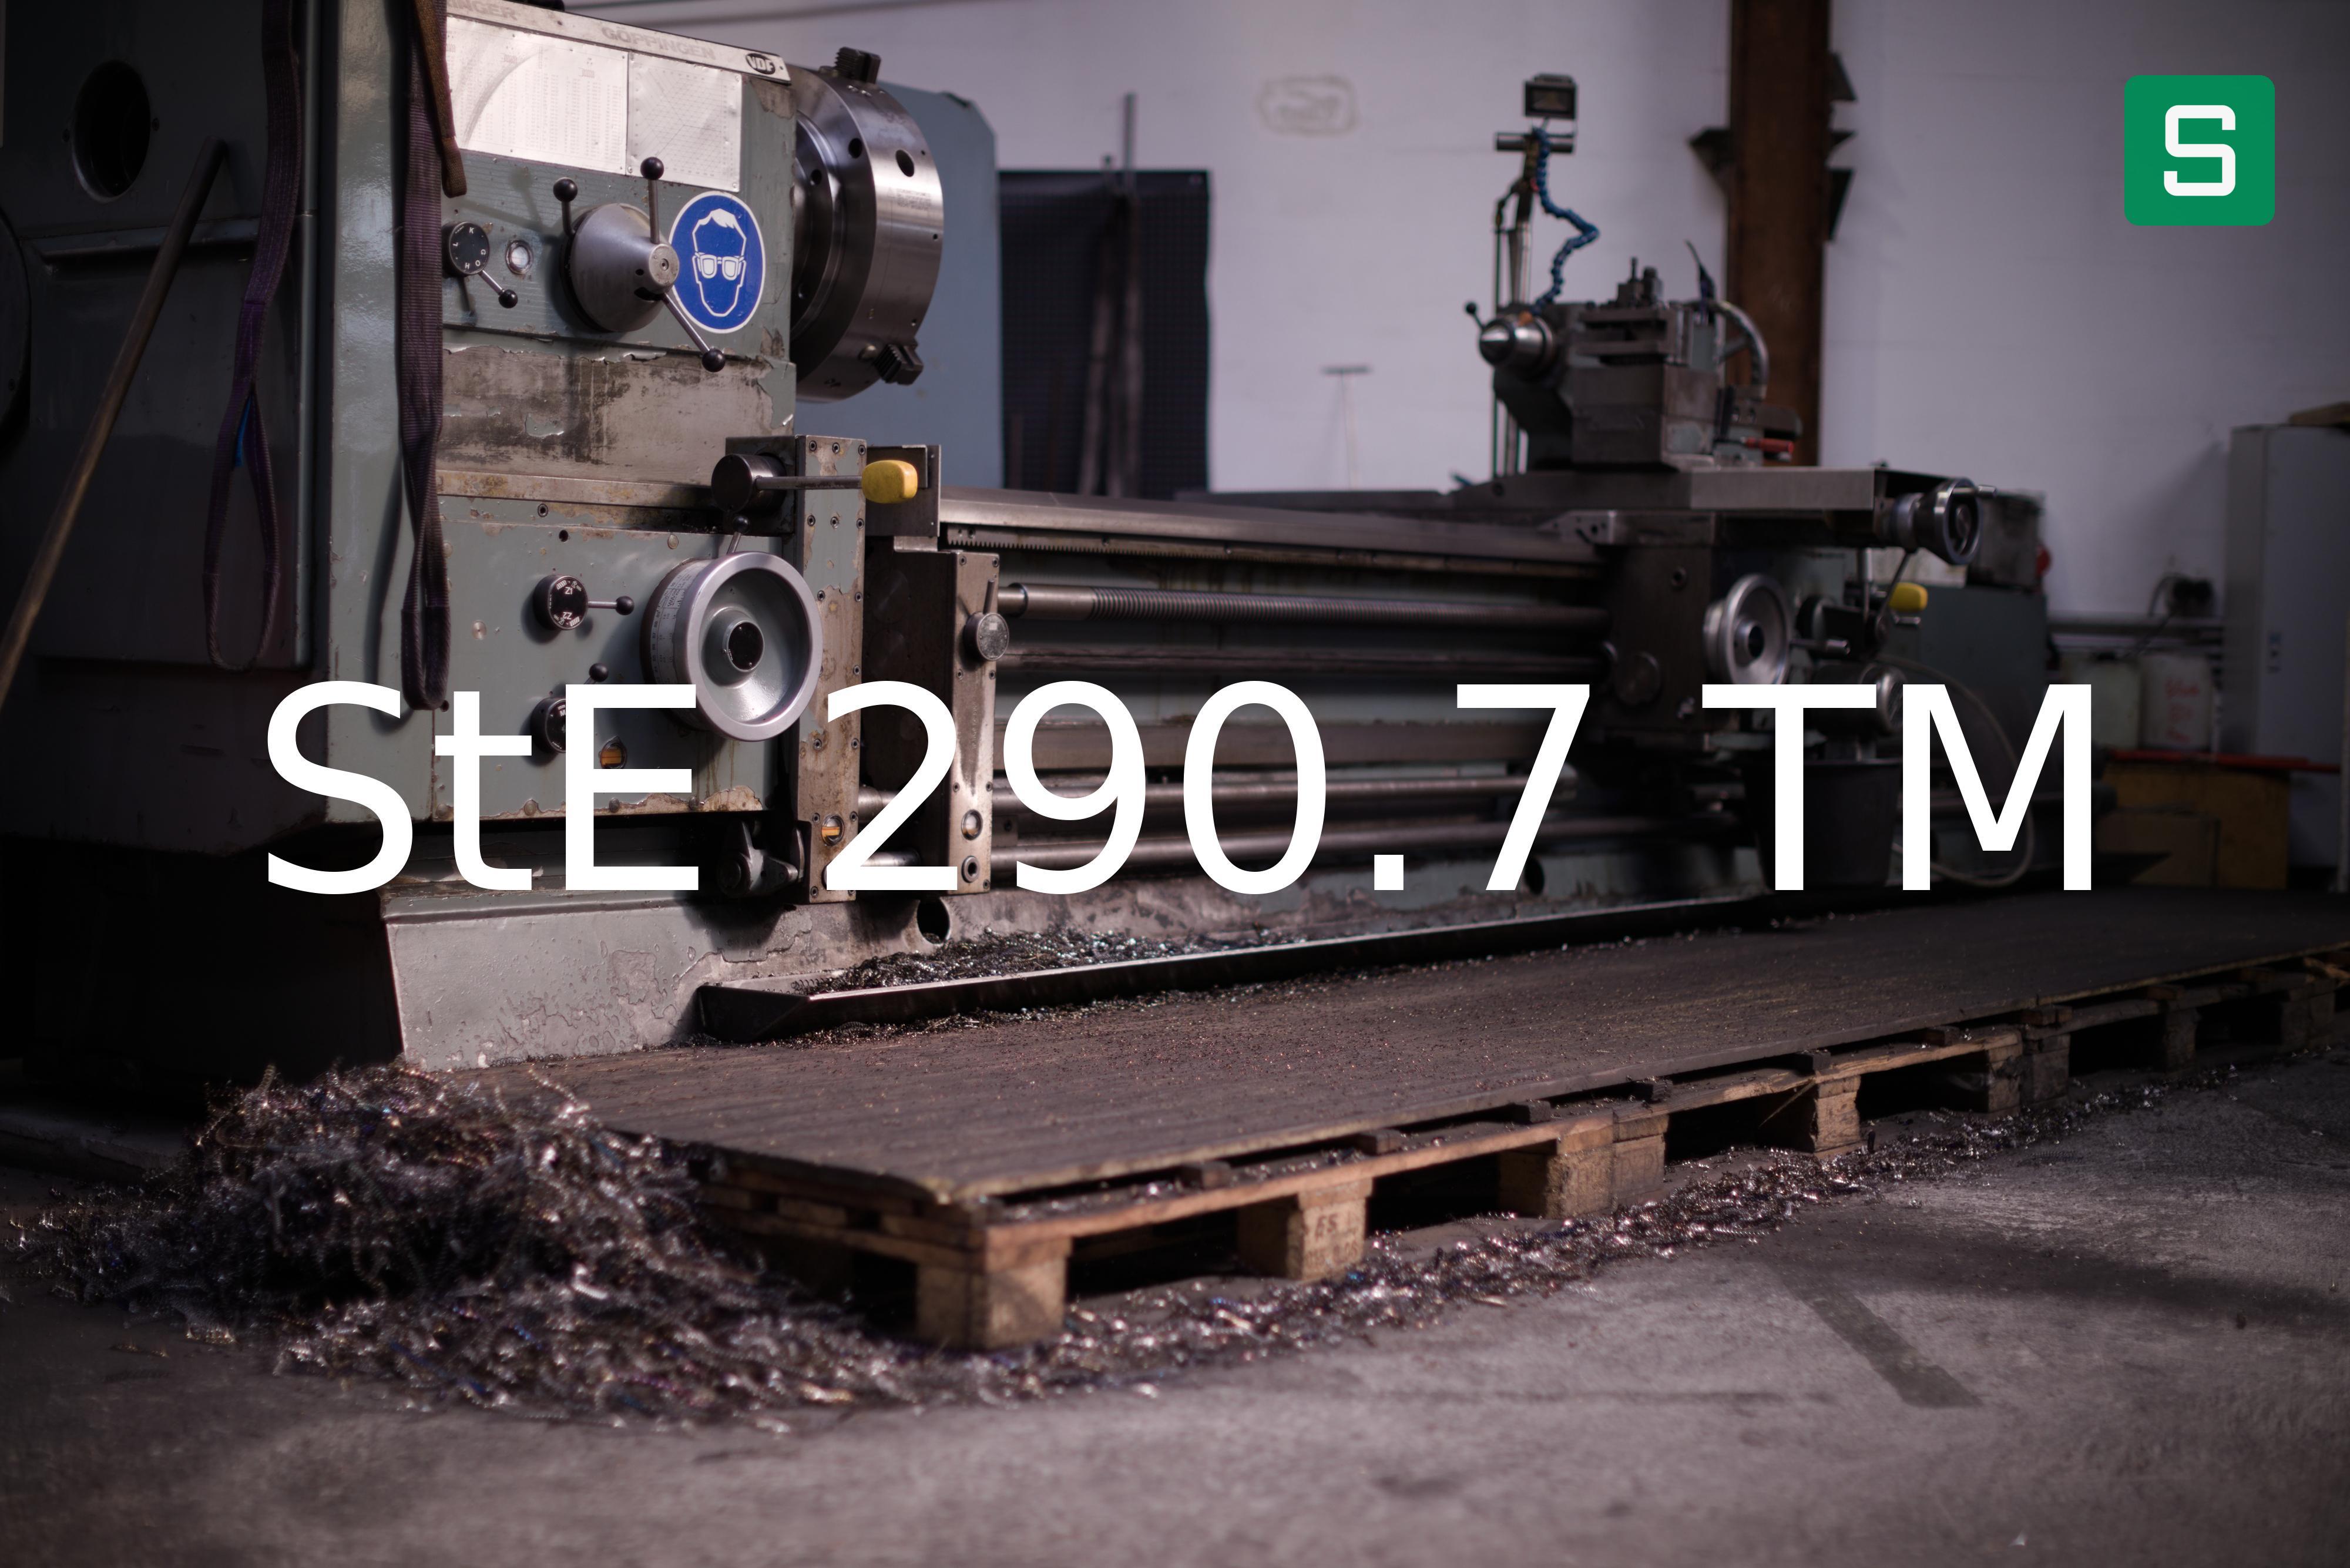 Steel Material: StE 290.7 TM